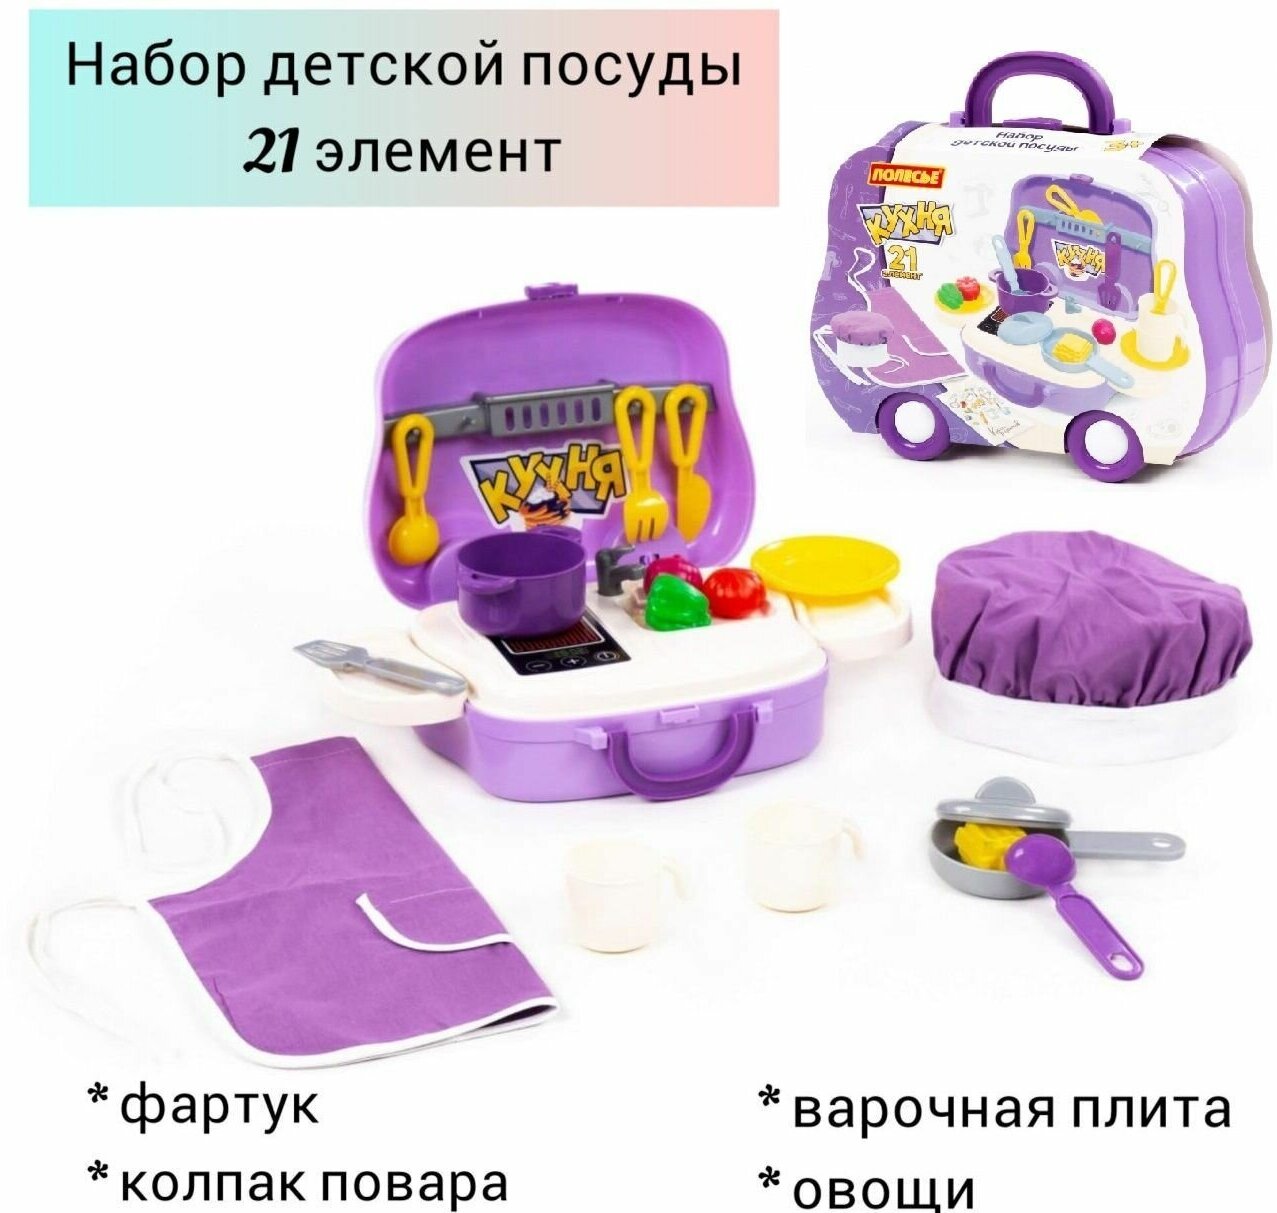 Игровой набор детской посуды в чемоданчике 21 элемент